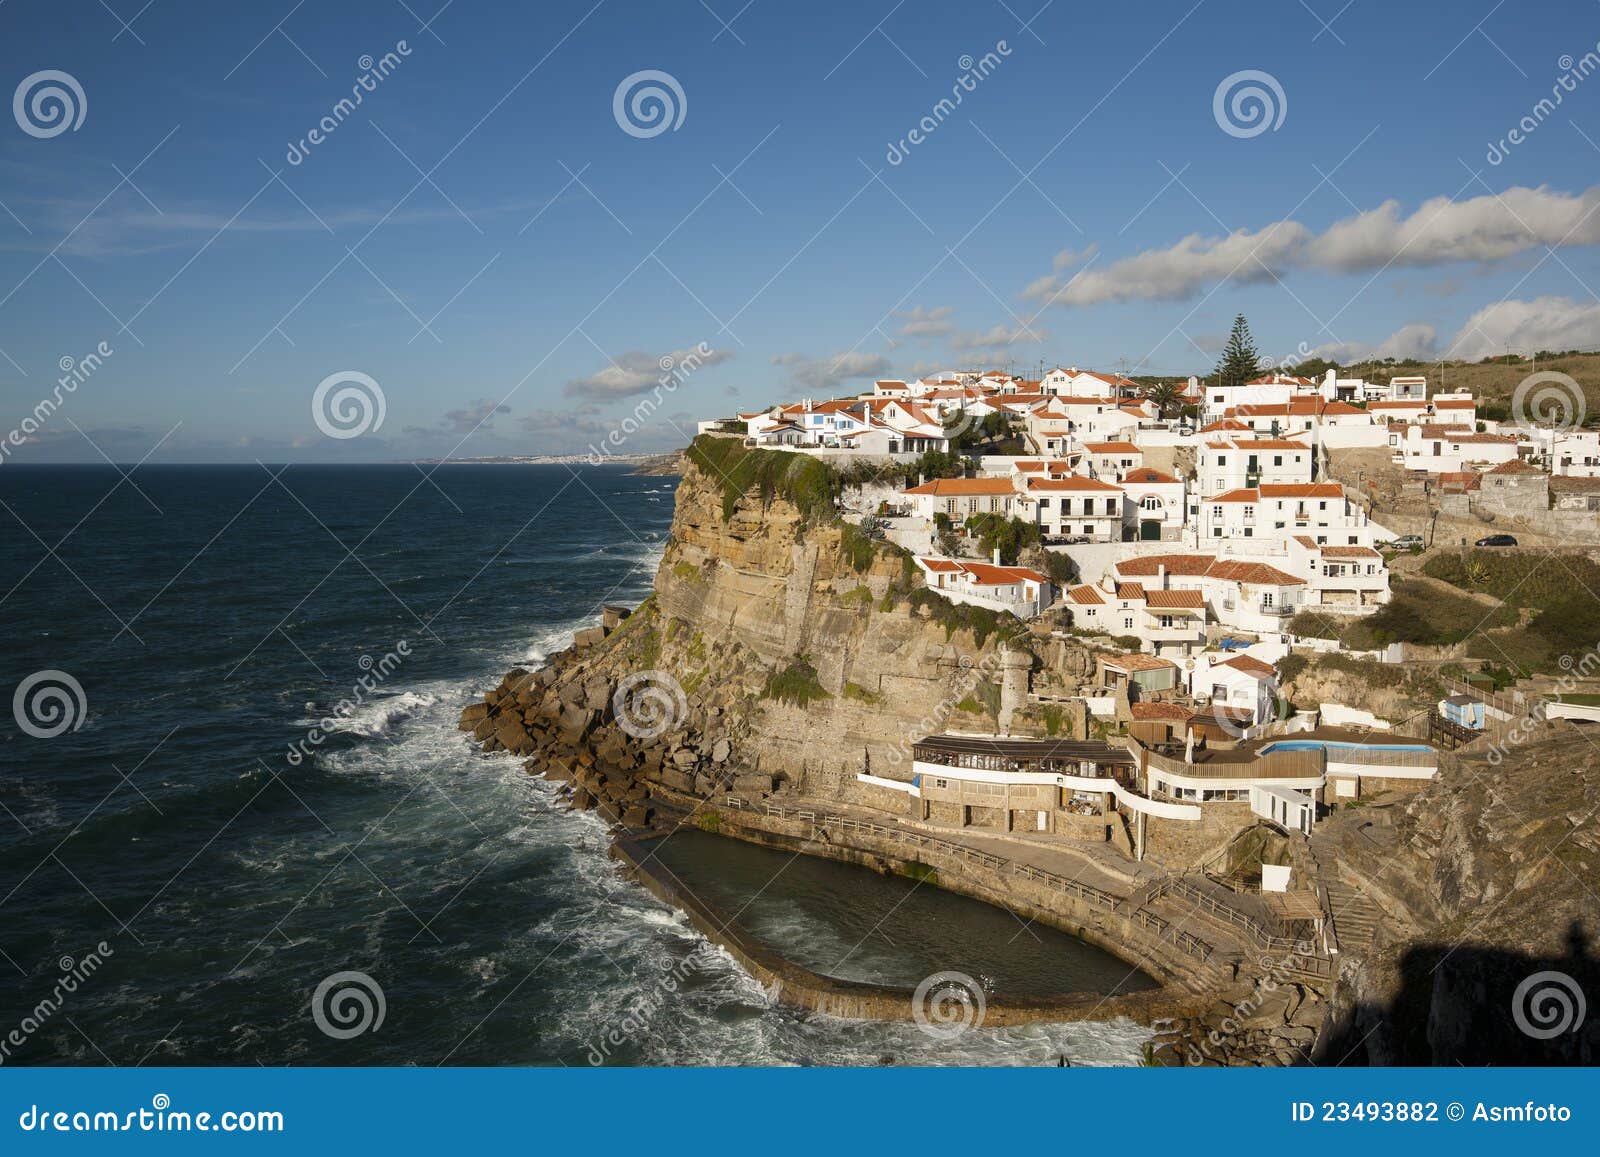 view of azenhas do mar, portugal.